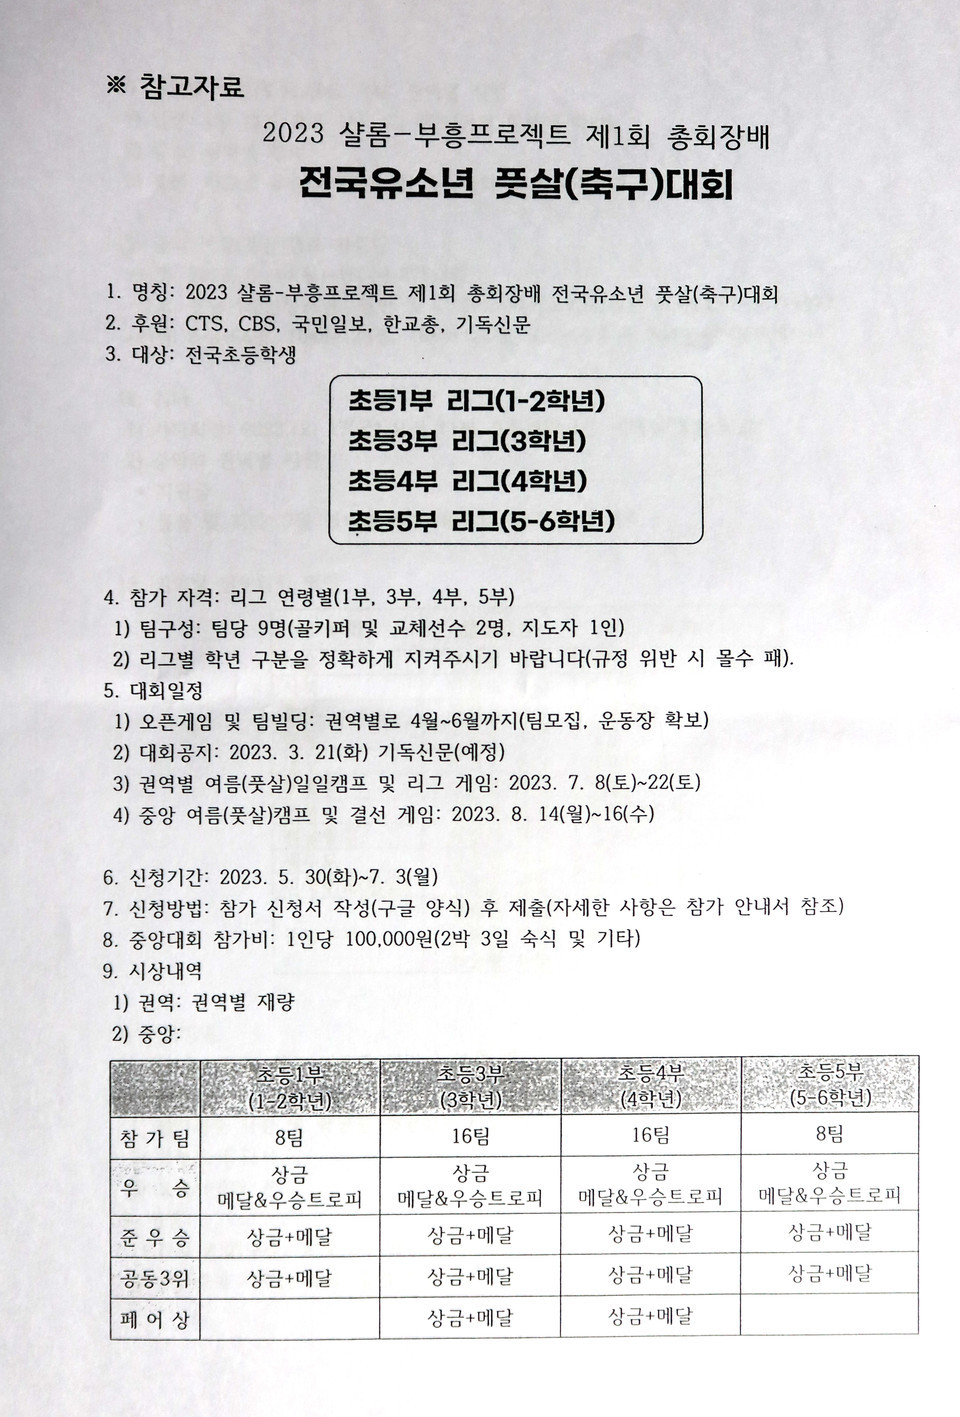 총회다음세대목회부흥운동본부 전국유소년풋살(축구)대회 기자회견 모습